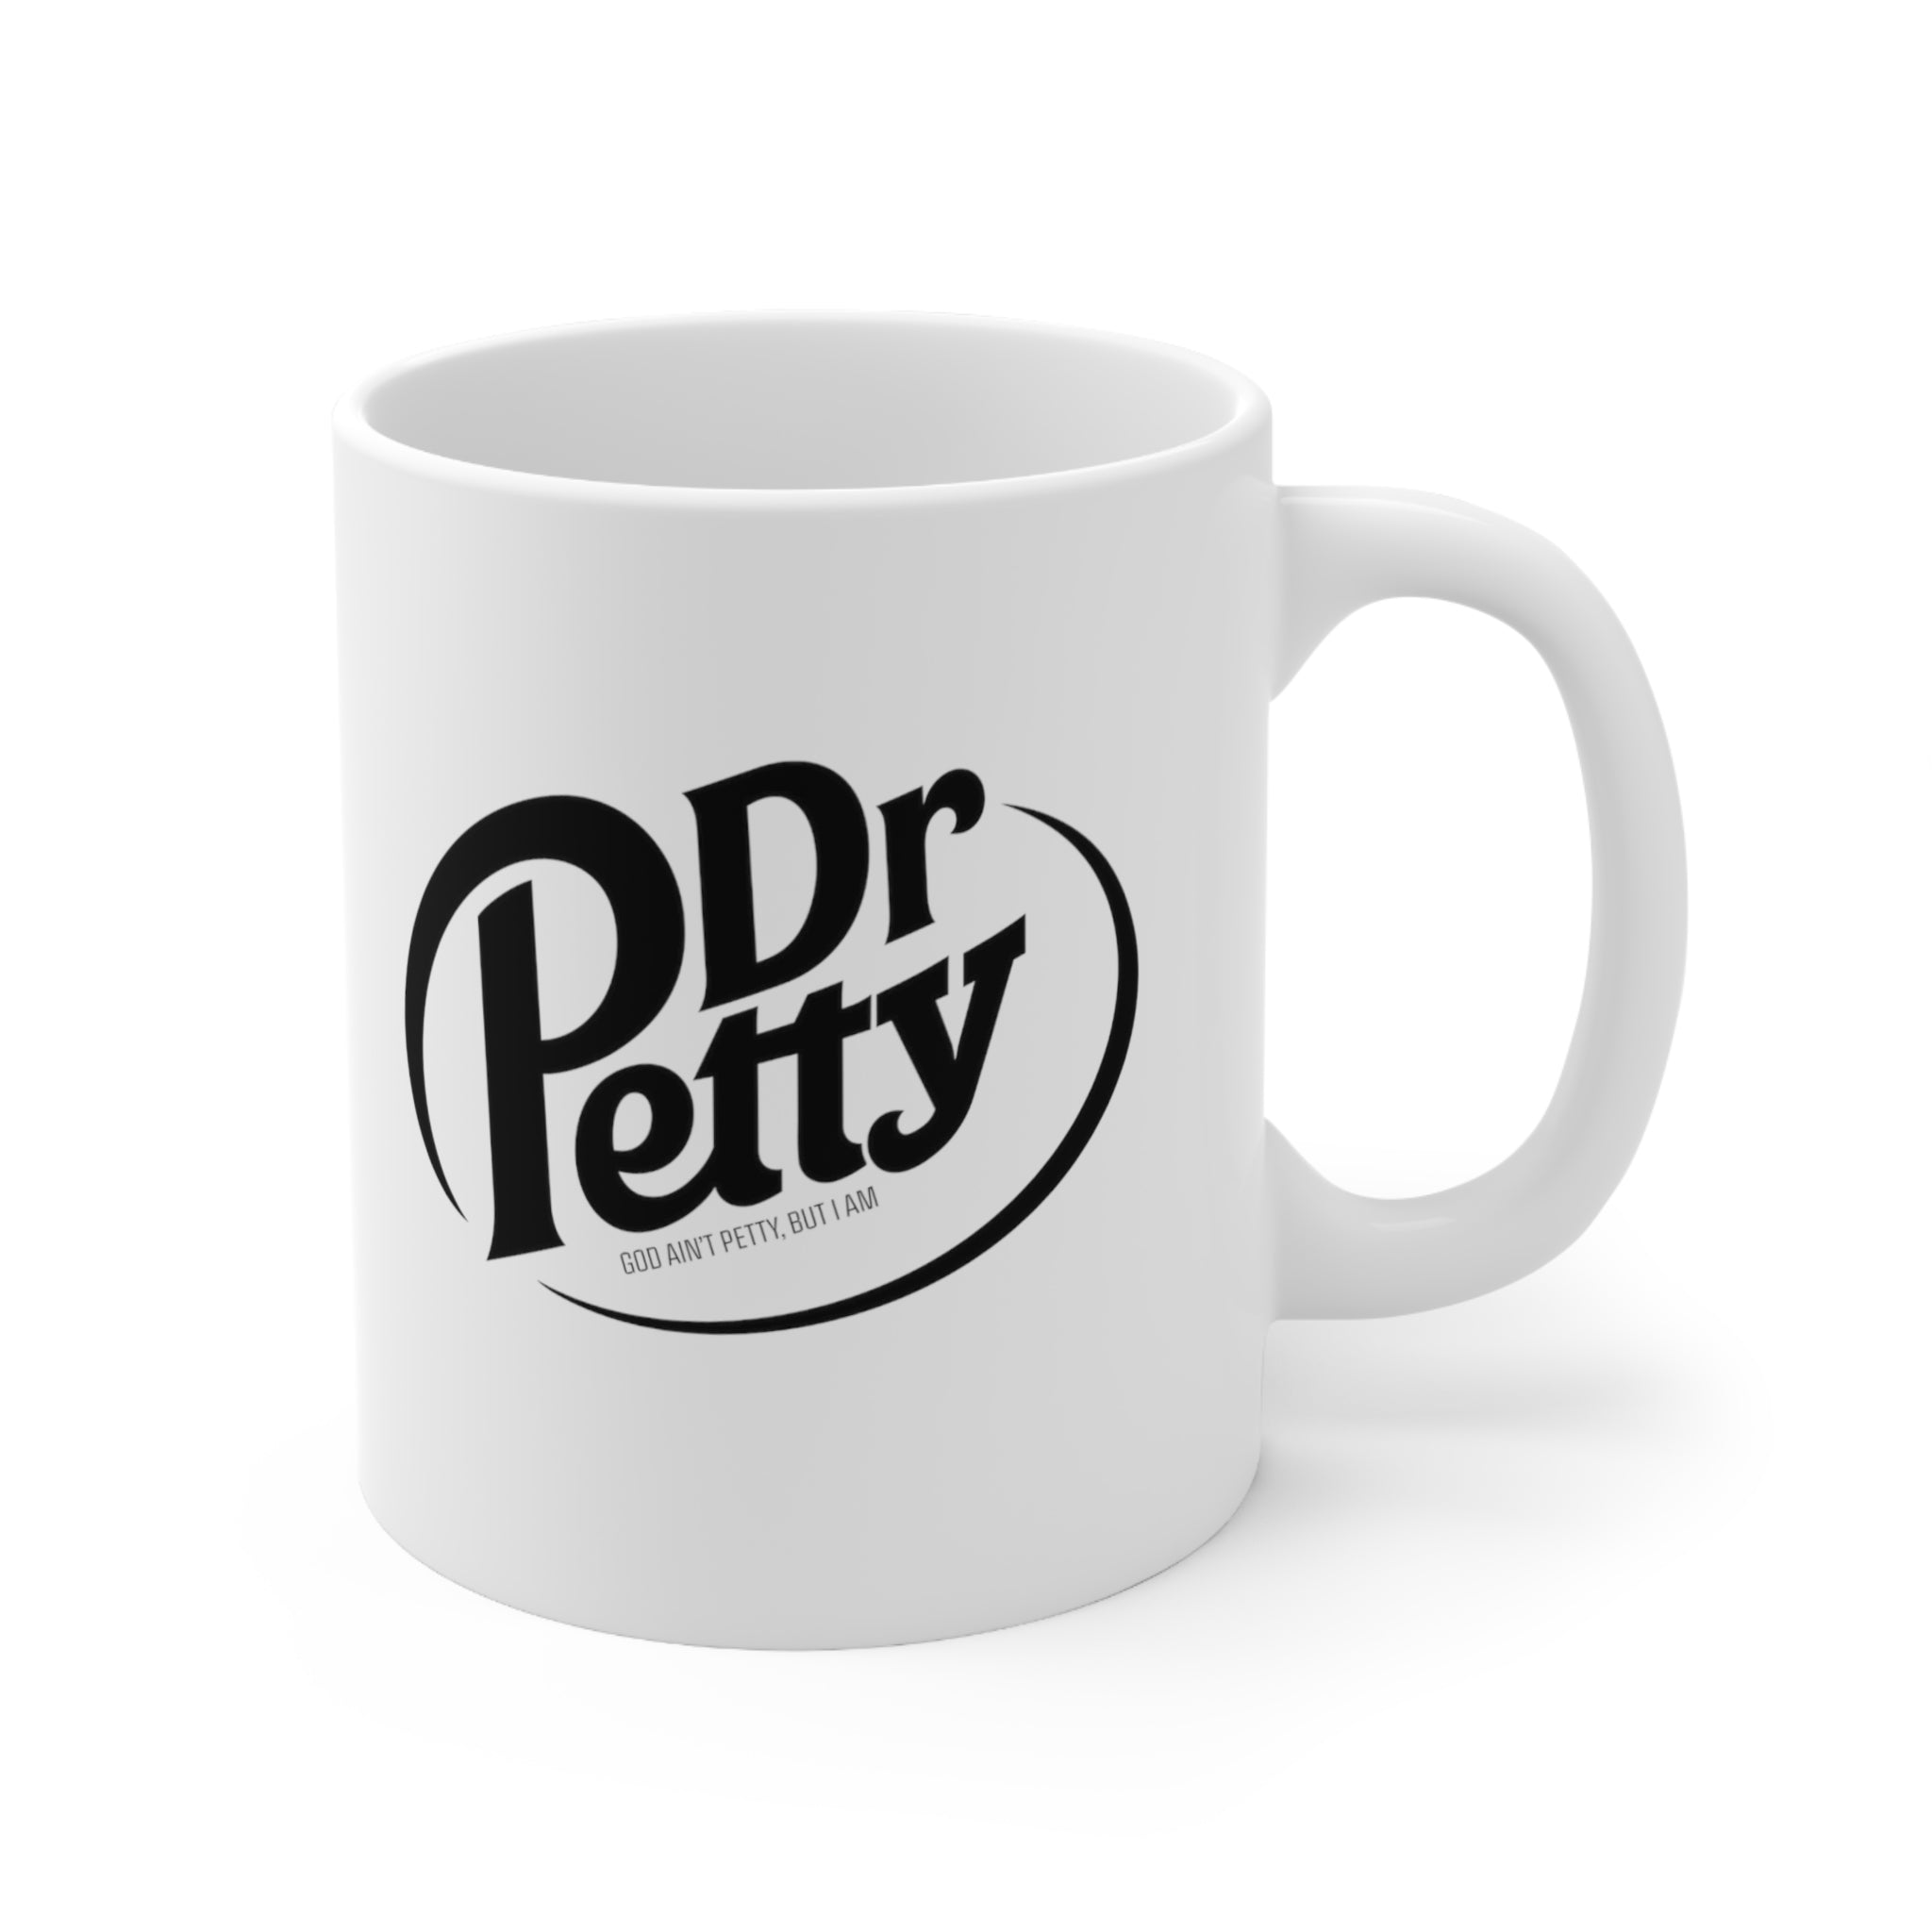 Dr. Petty Mug 11oz (White/Black)-Mug-The Original God Ain't Petty But I Am